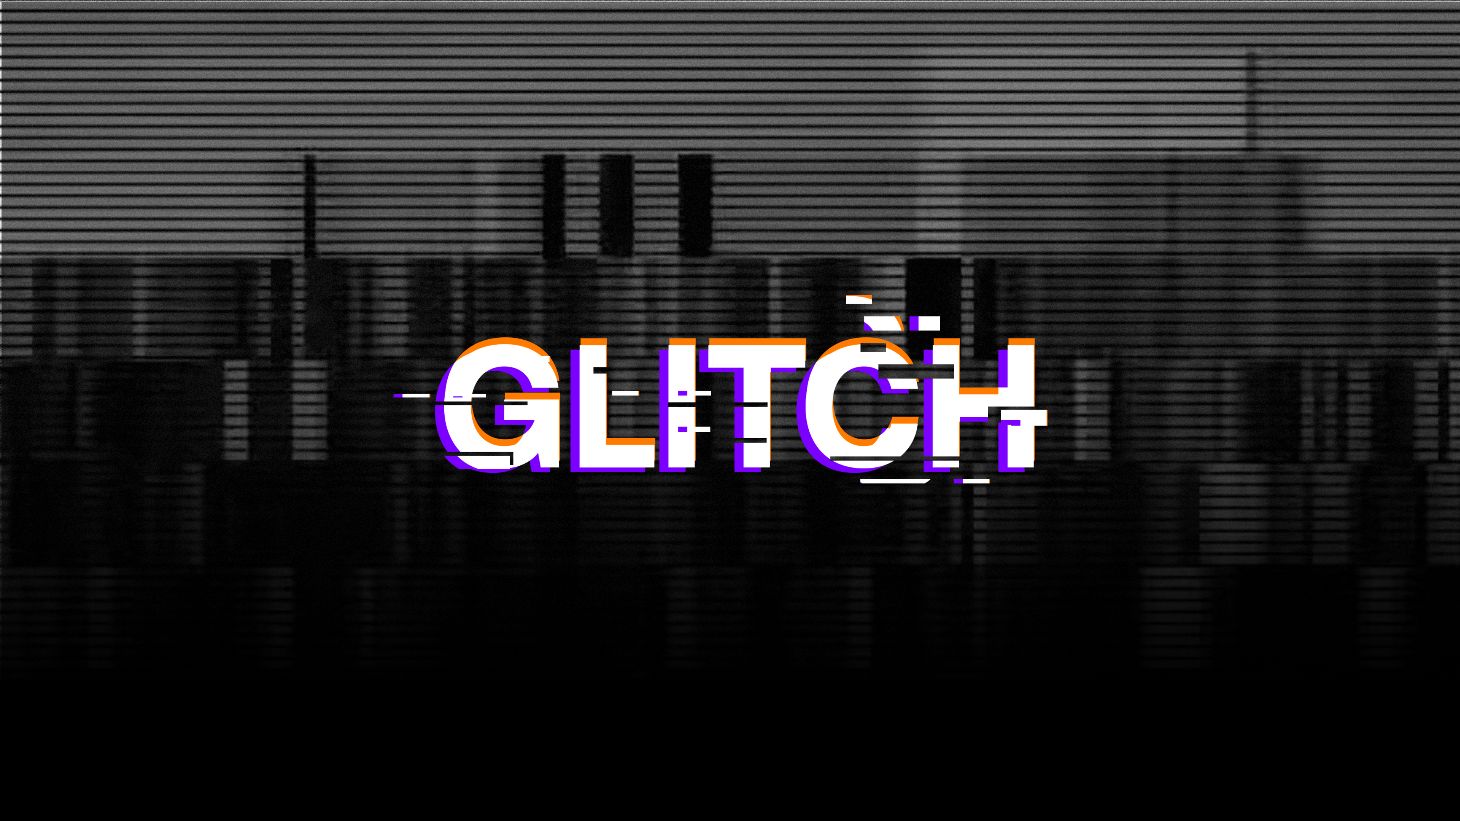 5 preajustos gratuïts de Glitch de Premiere Pro (consells de bricolatge i tutorial)